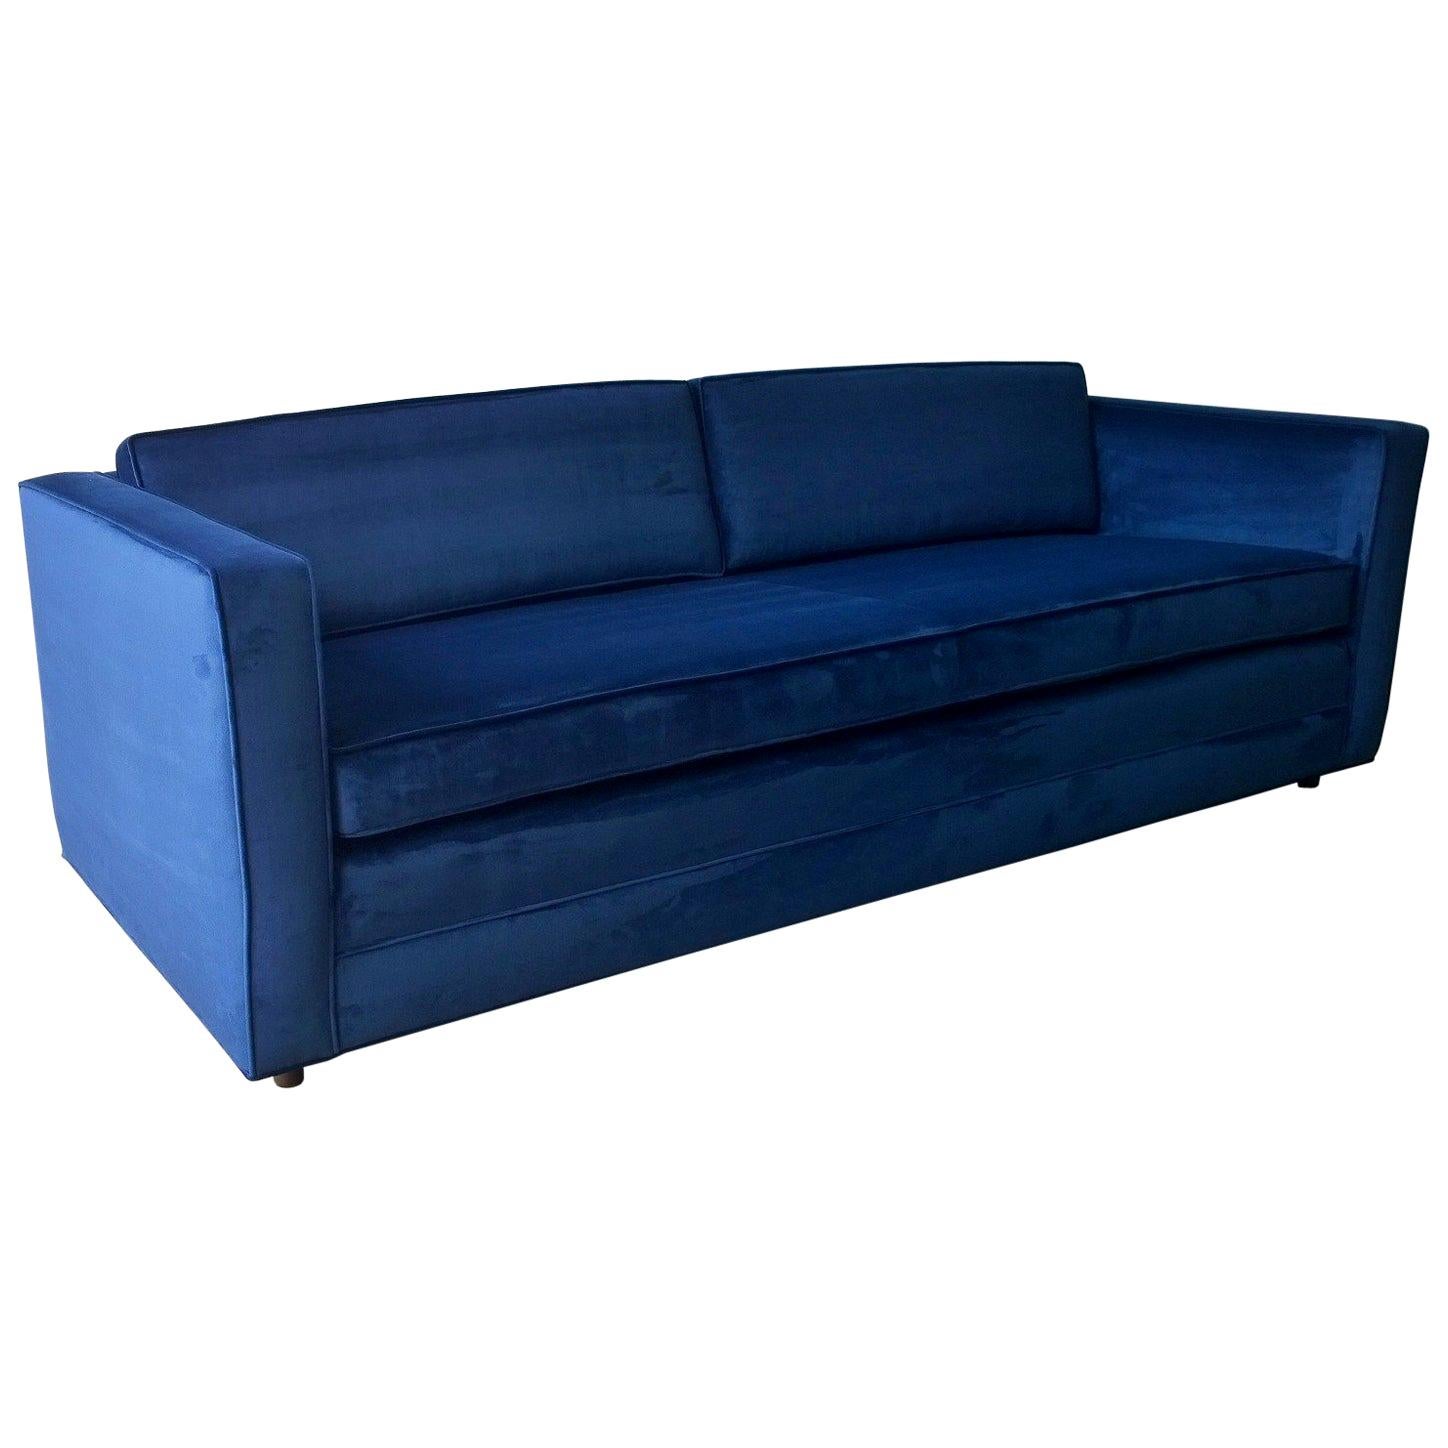 Mid-Century Modern Milo Baughman Style Tuxedo Sofa in New Blue Cotton Velvet